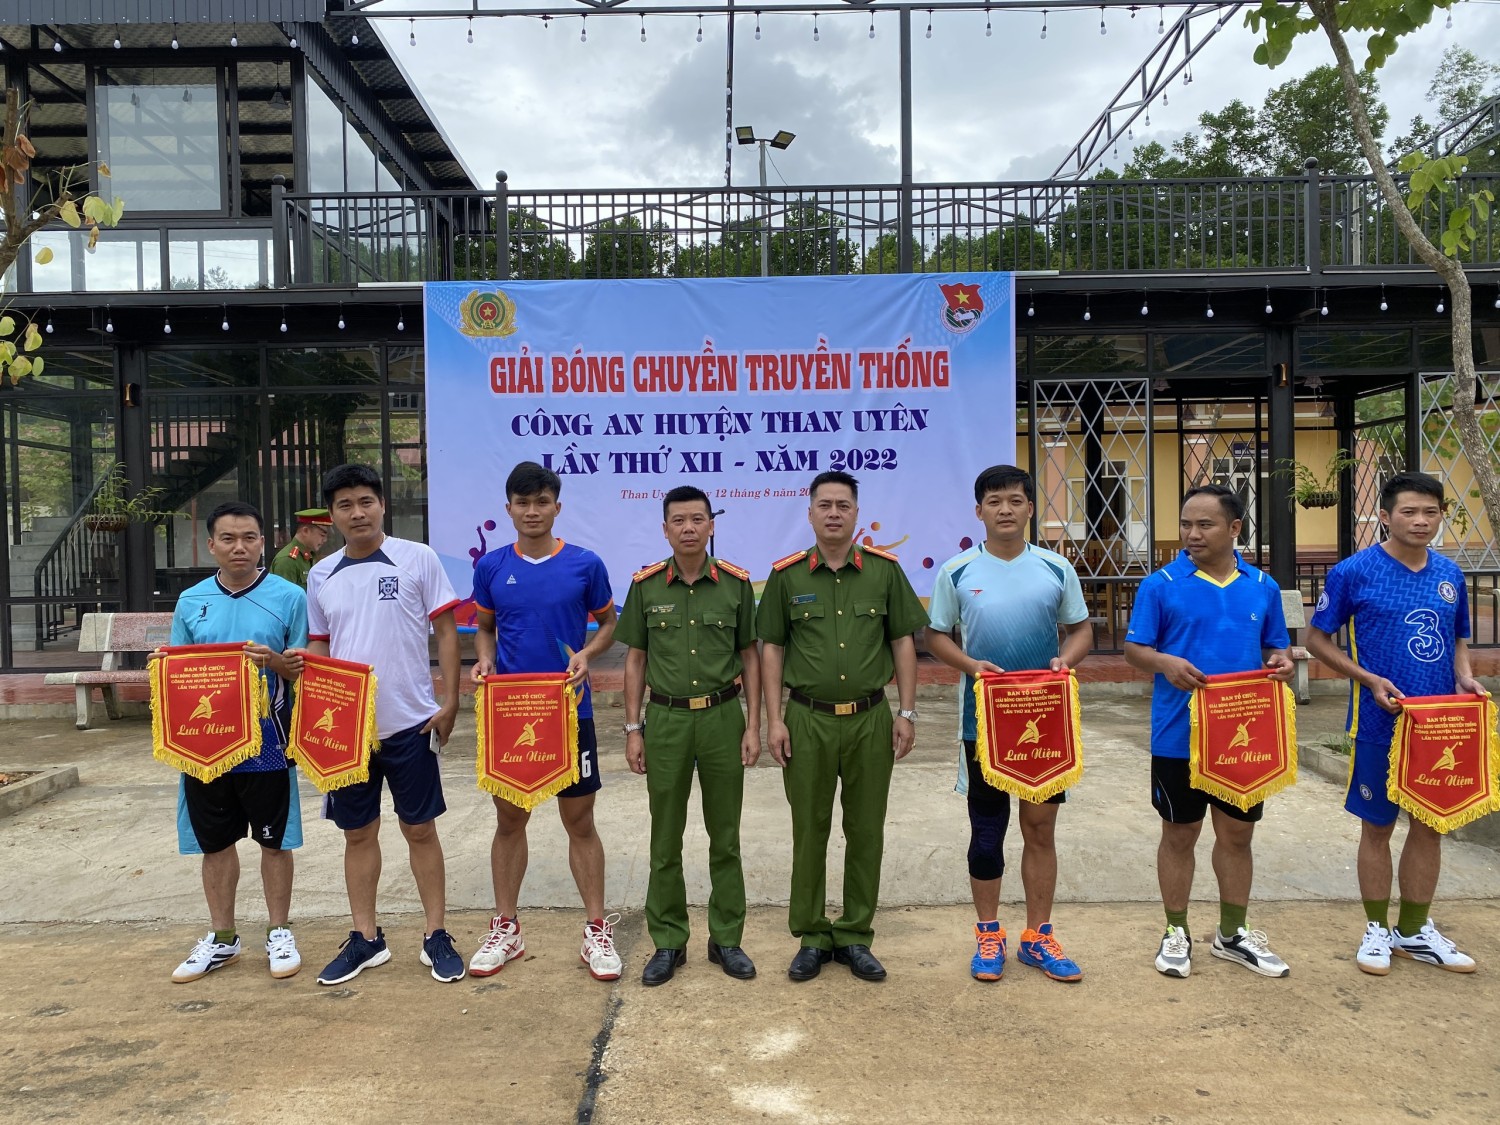 Đồng chí Thiếu tá Trần Công Dũng, Bí thư Đảng ủy, Trưởng Công an huyện trao cờ lưu niệm cho các Đội tham dự giải